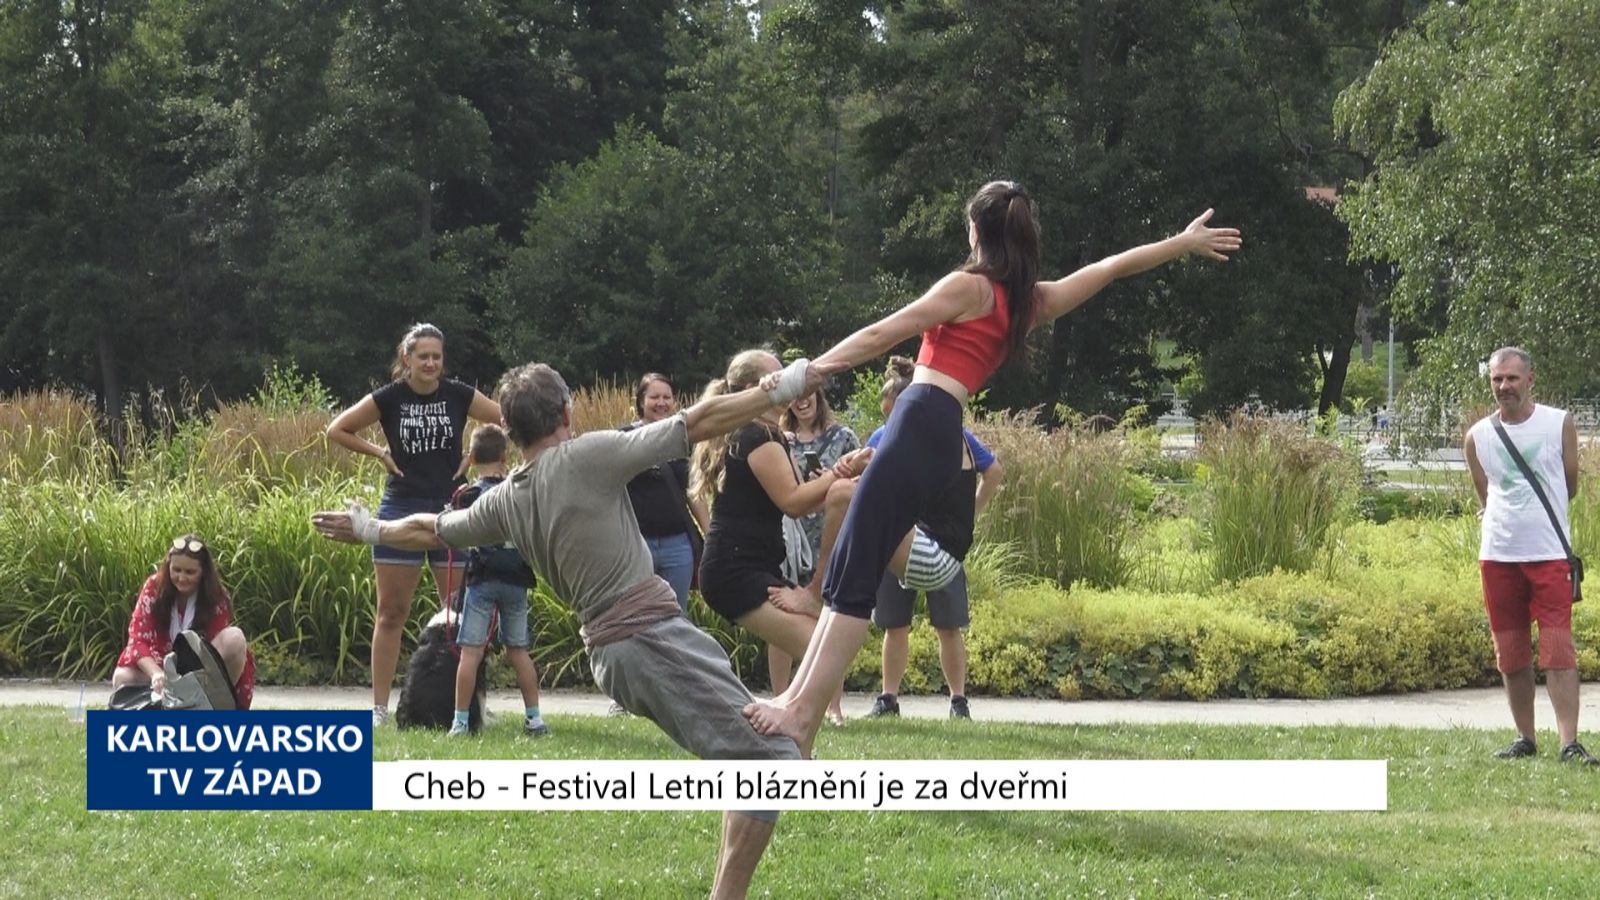 Cheb: Festival Letní bláznění je za dveřmi (TV Západ)